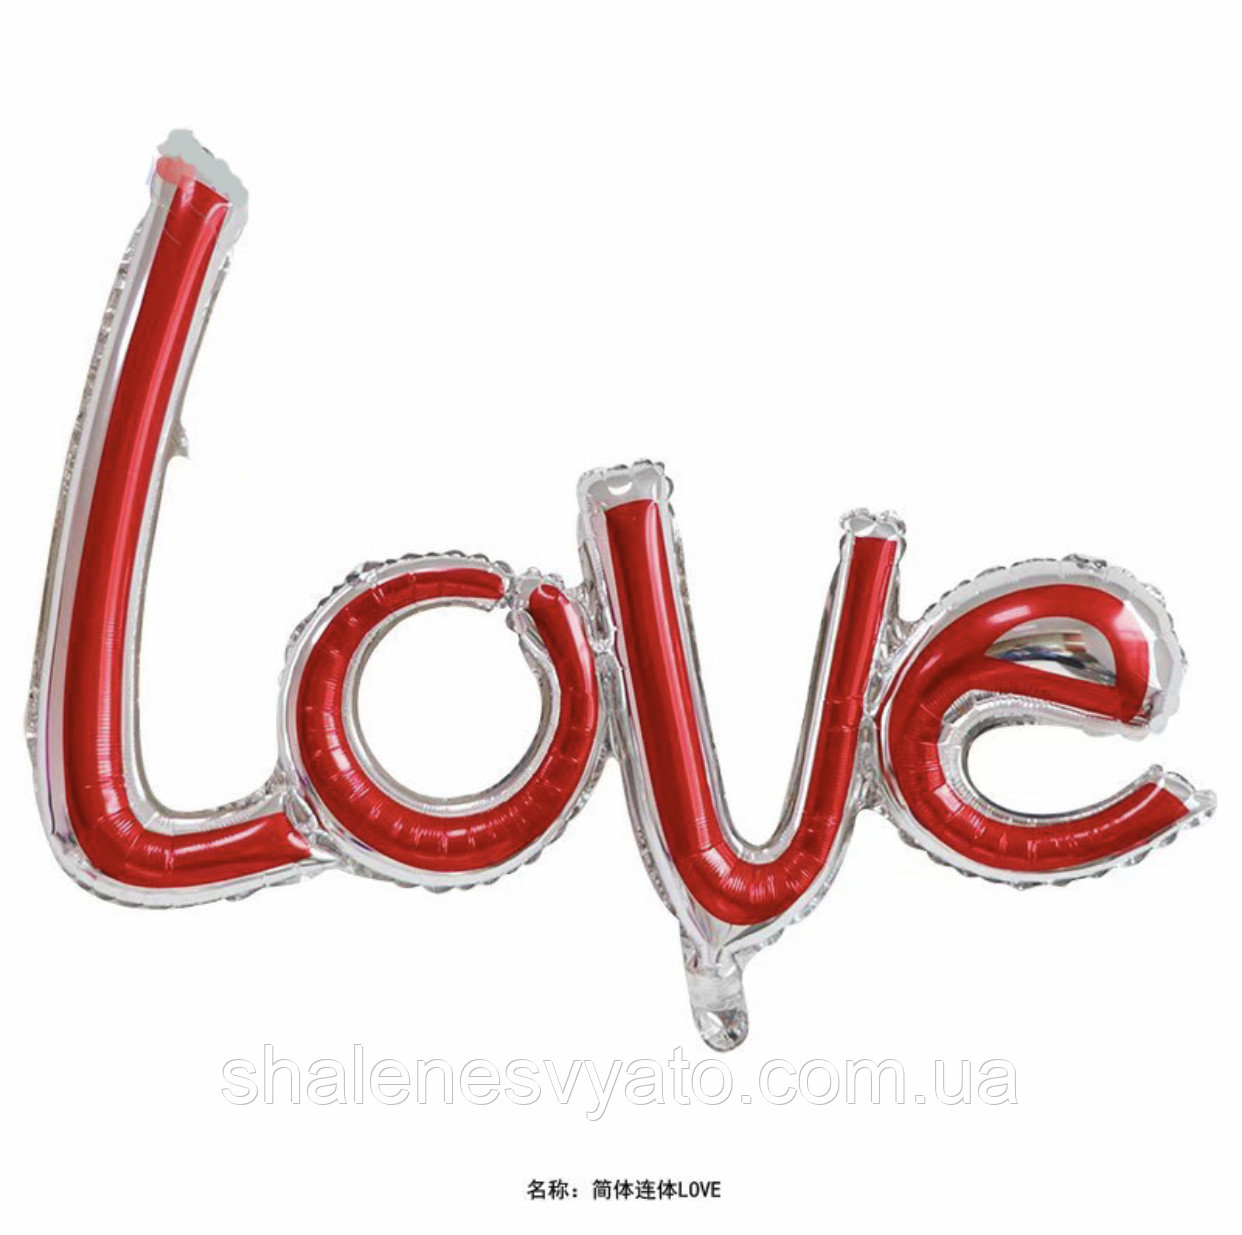 Фольгированная Надпись "LOVE" Красно-серебро (фигурное)83х38 см